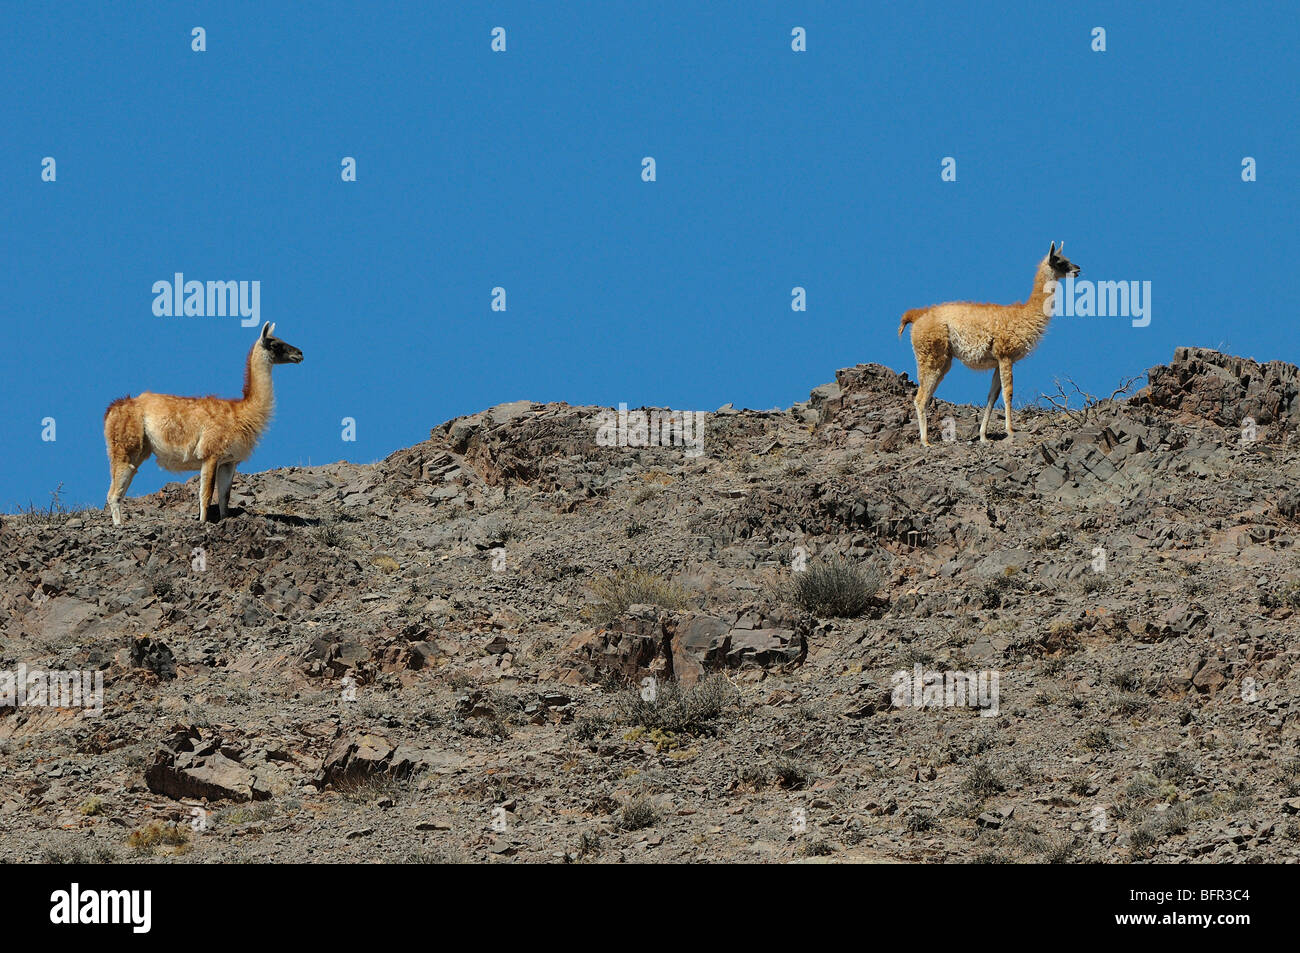 Guanaco (Lama guanicoe) par de cresta rocosa, el Parque Nacional Los Cardones, Argentina Foto de stock